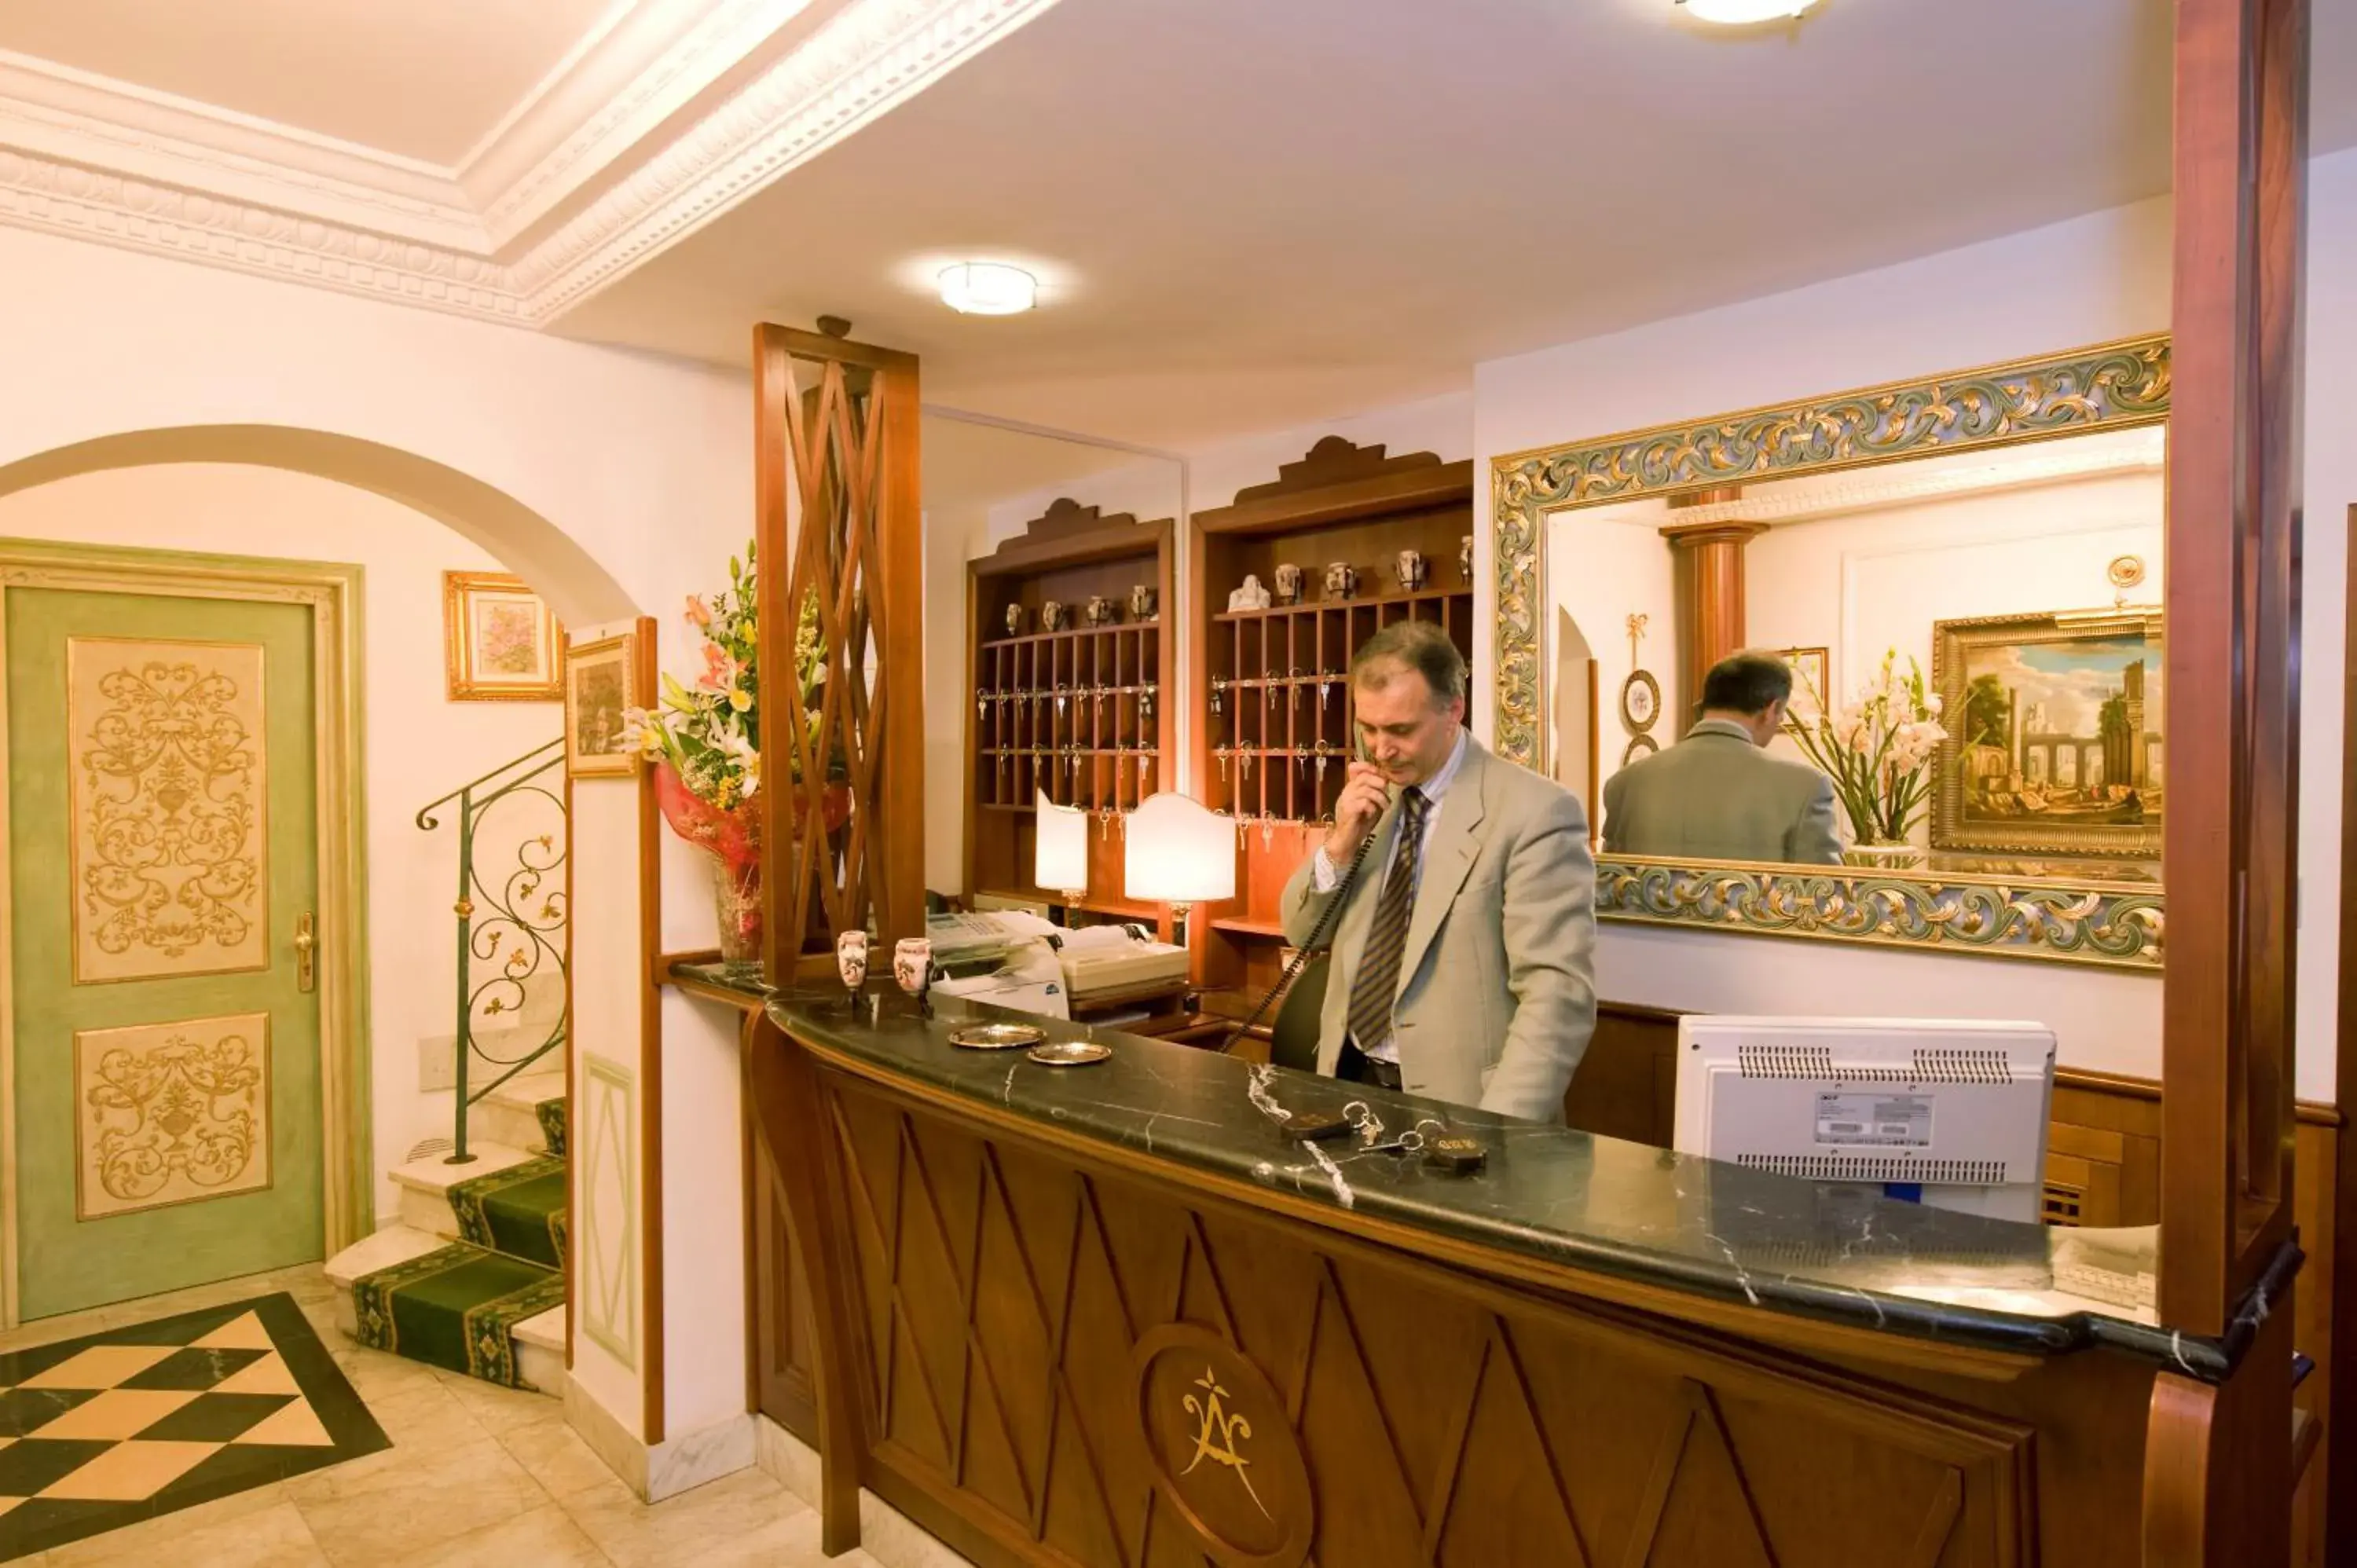 Lobby or reception, Lobby/Reception in Hotel Amalfi